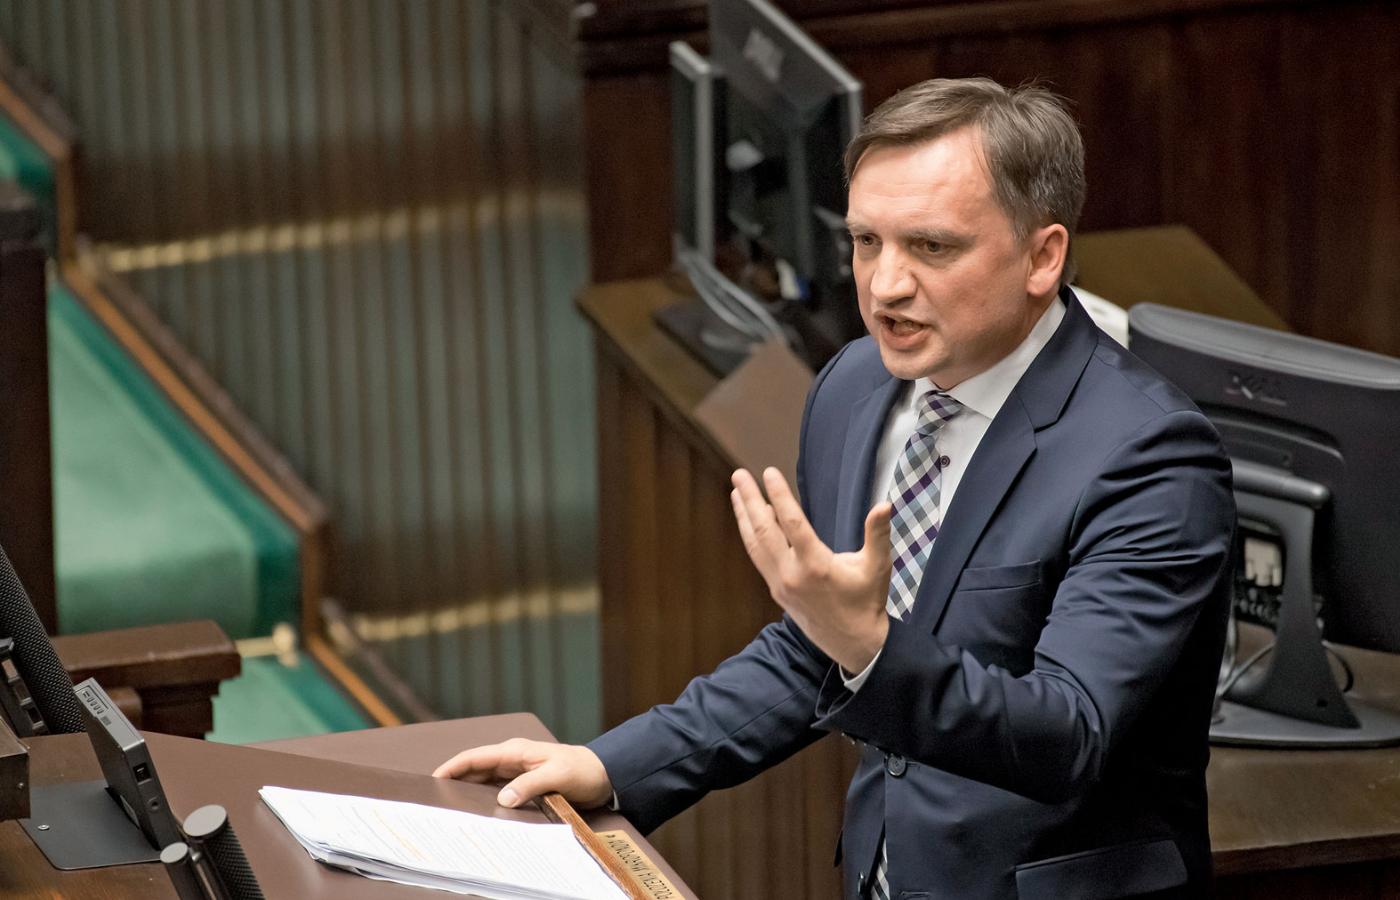 Kodeks karny, który Sejm właśnie zmienił, przygotowywano osiem lat. Jego zmiana zajęła politykom PiS 48 godzin.